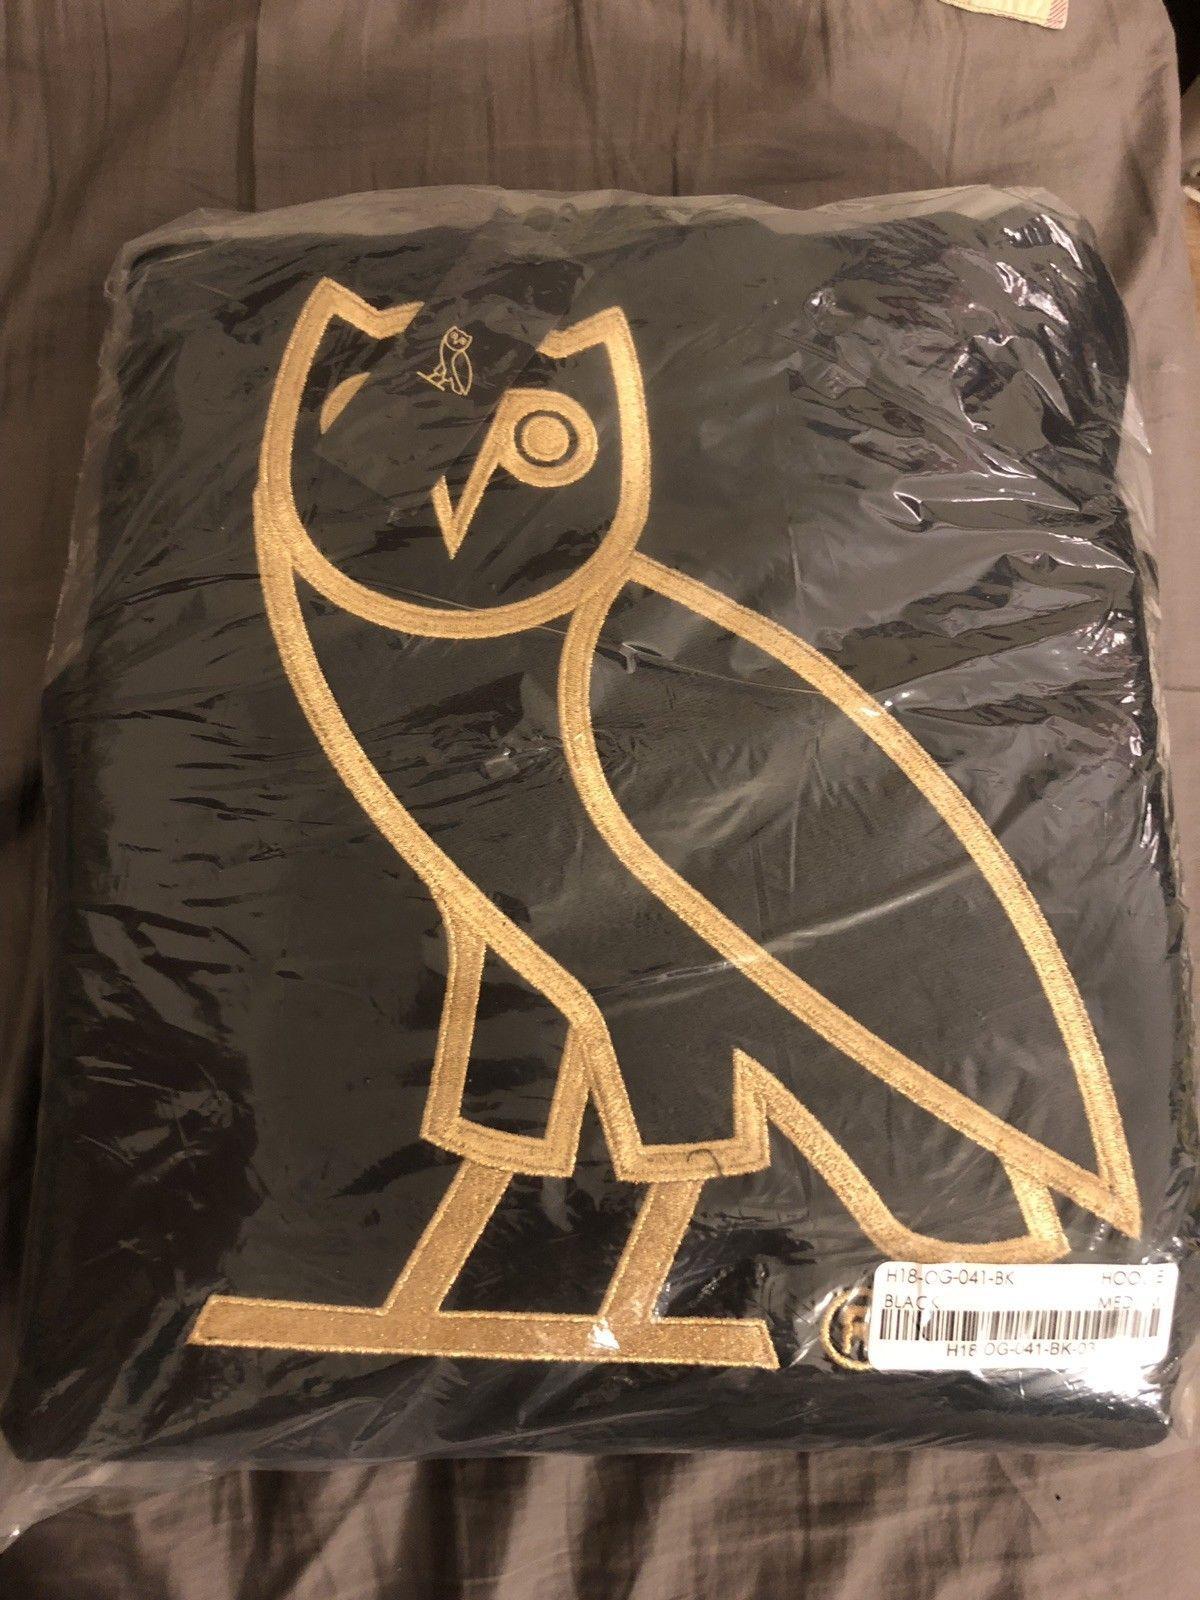 OVOXO Owl Logo - Drake Octobers Very Own OVO Owl Hoodie Sweatshirt